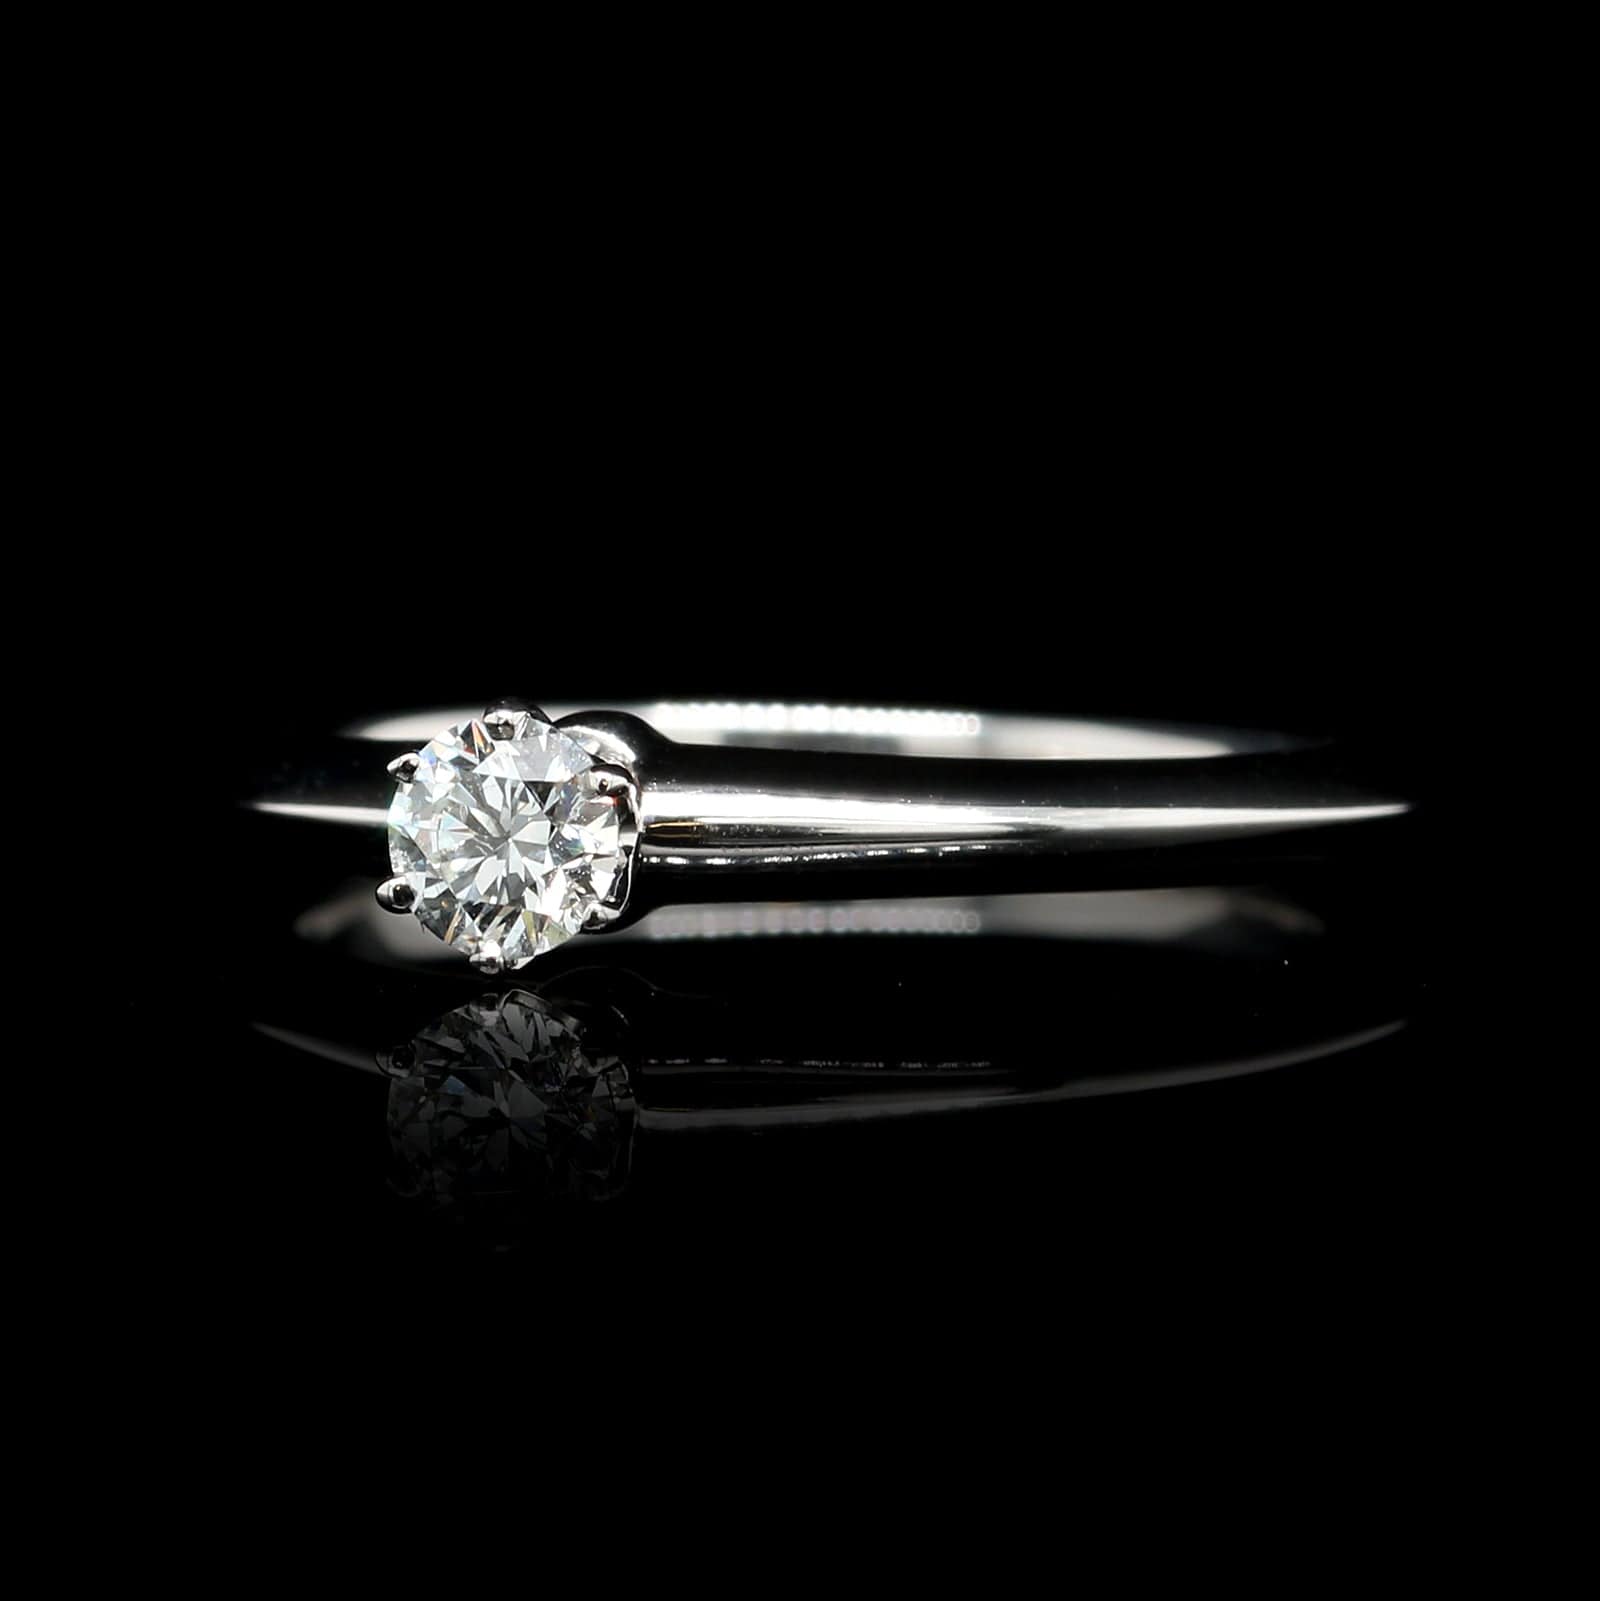 Tiffany & Co. Tiffany Setting Diamond Solitaire